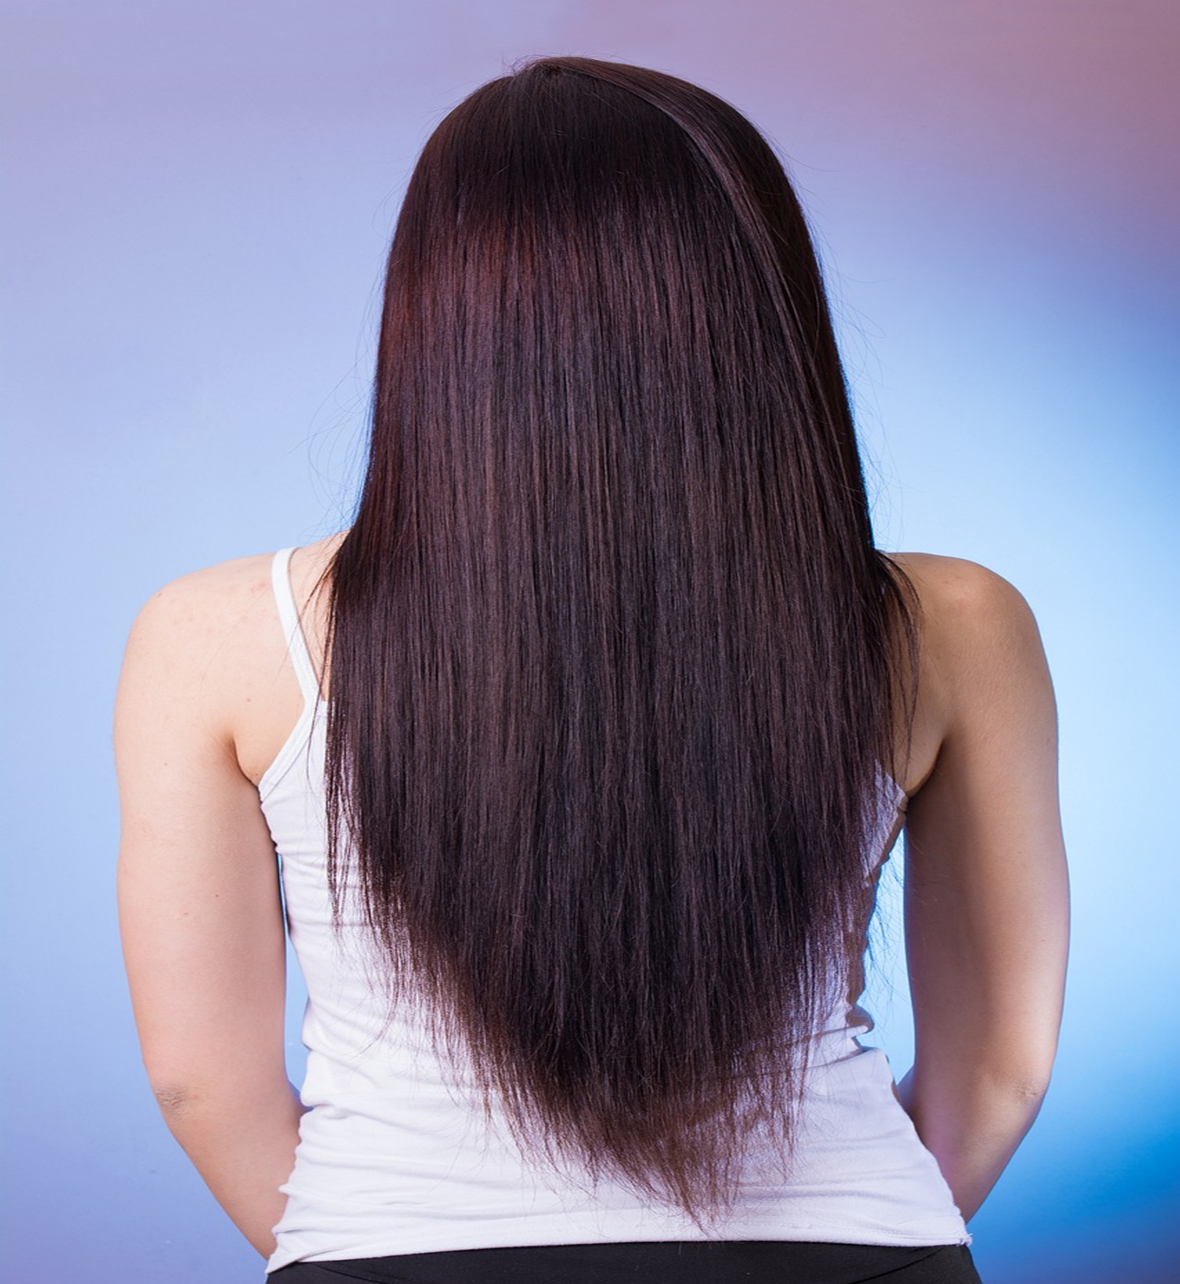 Hair Growth Tips : बाल बढ़ाने के टिप्स | घर पर बाल बढ़ाने के टिप्स | प्राकृतिक बाल विकास टिप्स ( Hair Growth Tips At Home ,natural Hair Growth Tips )